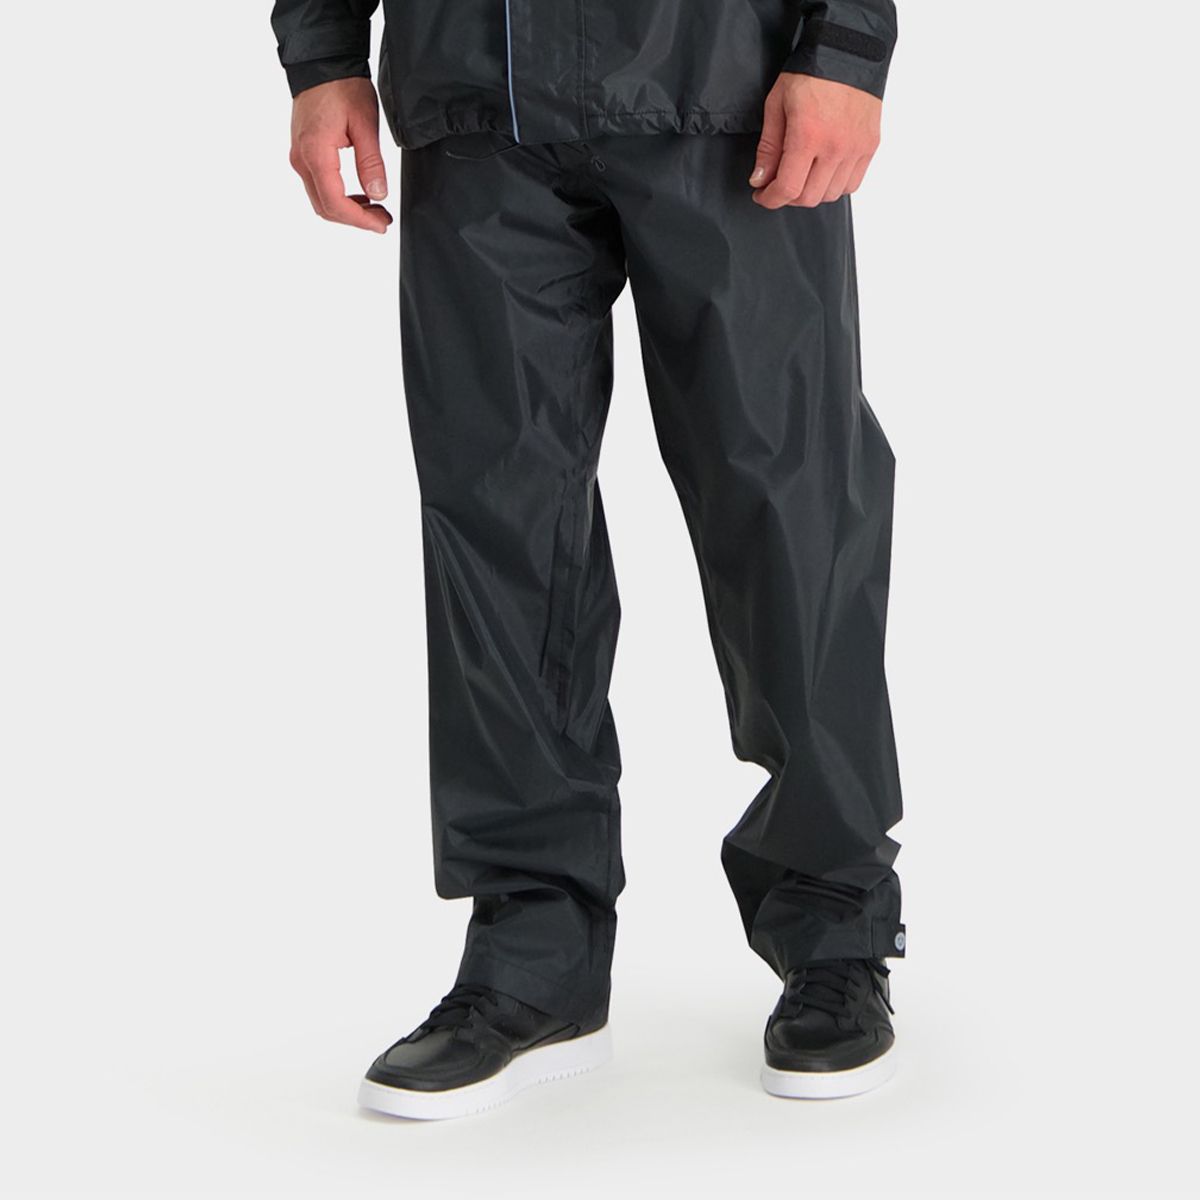 Passat Pantaloni da pioggia Essential fit example